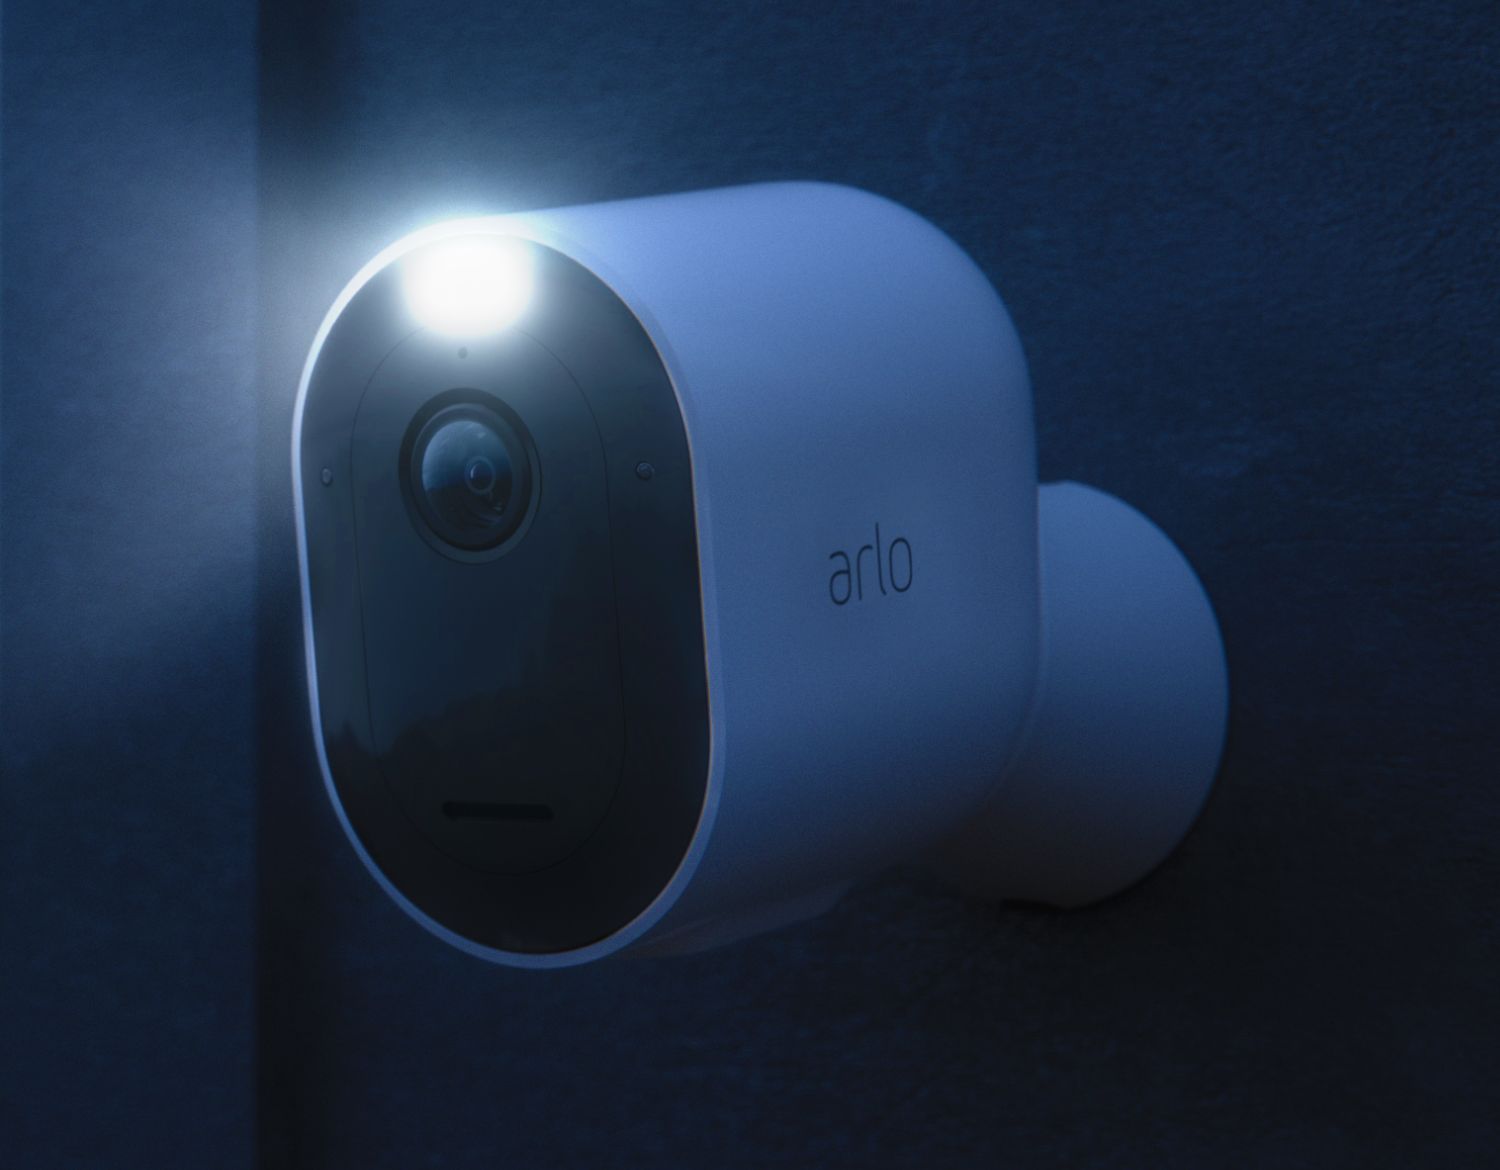  En närbild av en Arlo-kamera på en vägg utanför på natten med spotlight aktiverad